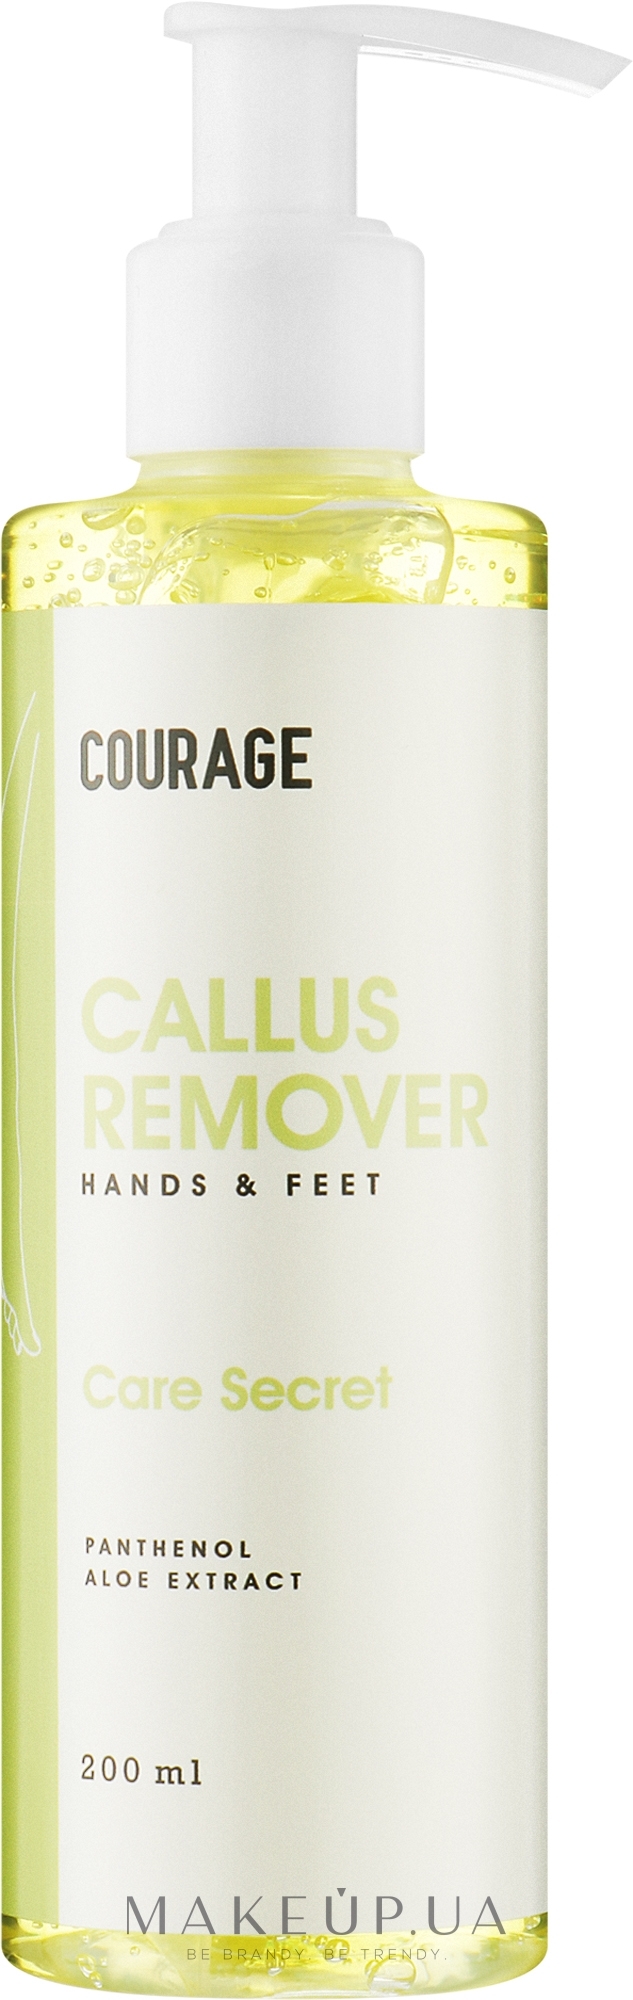 Гель-пилинг для удаления загрубевшей кожи стоп - Courage Callus Remover — фото 200ml